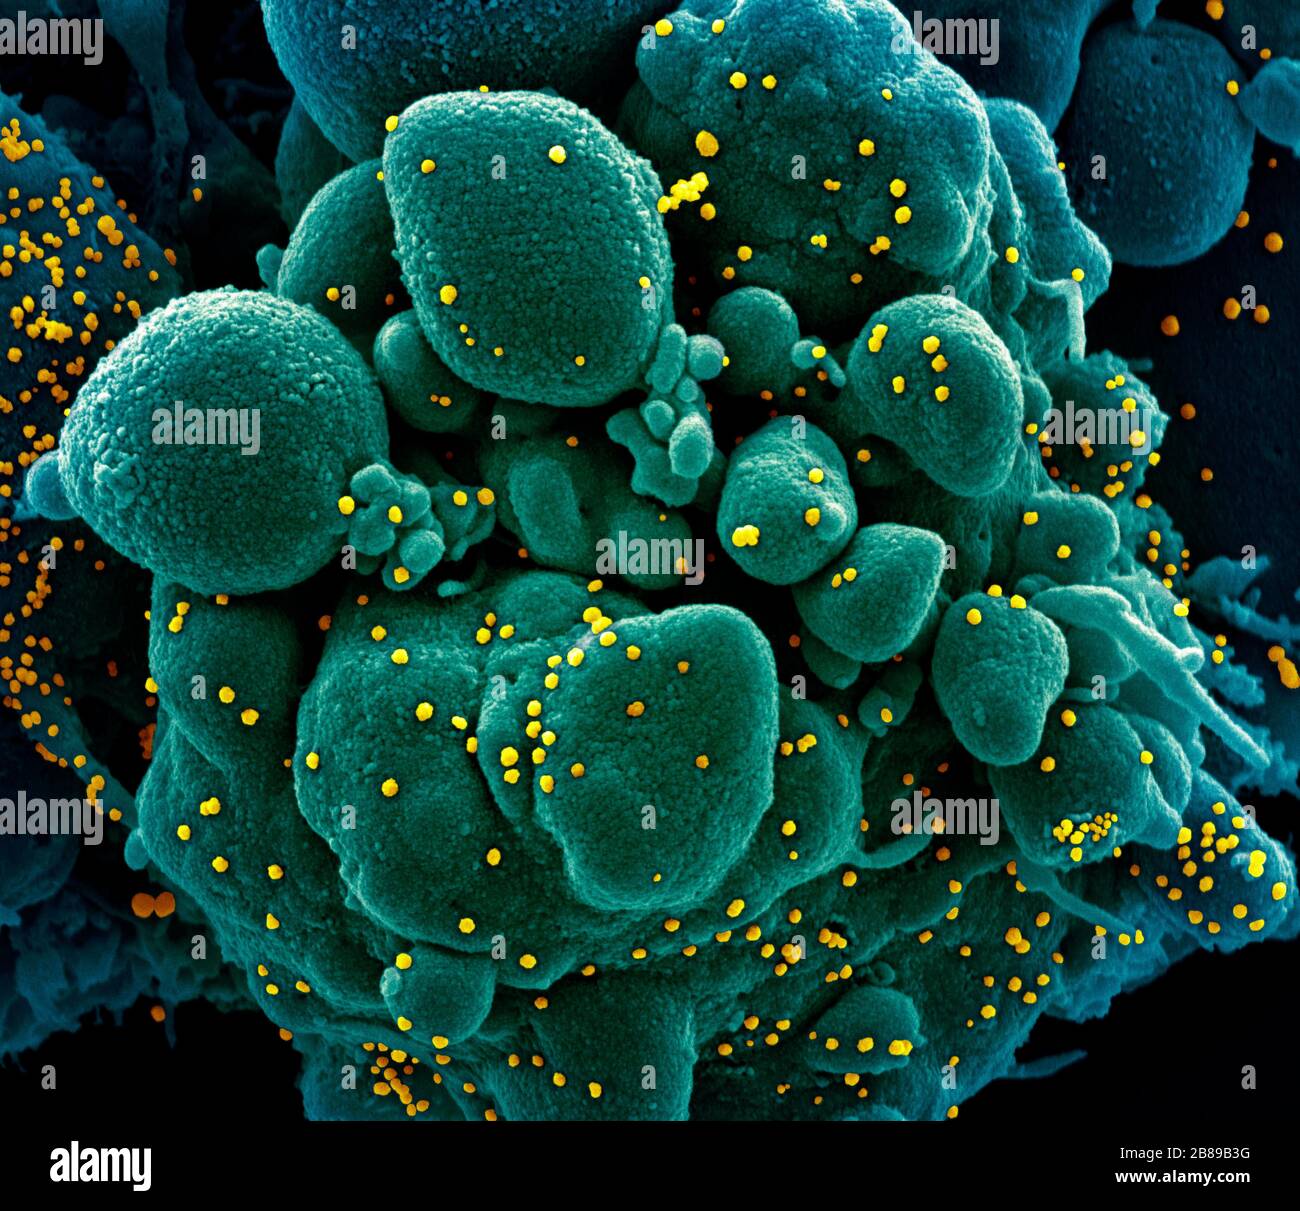 Una micrografia elettronica a trasmissione di COVID-19, nuovo coronavirus, una cellula apoptotica fortemente infettata con particelle di virus SARS-COV-2, isolata da un campione di paziente presso il NIAID Integrated Research Facility 19 marzo 2020 a Fort Detrick, Maryland. Foto Stock